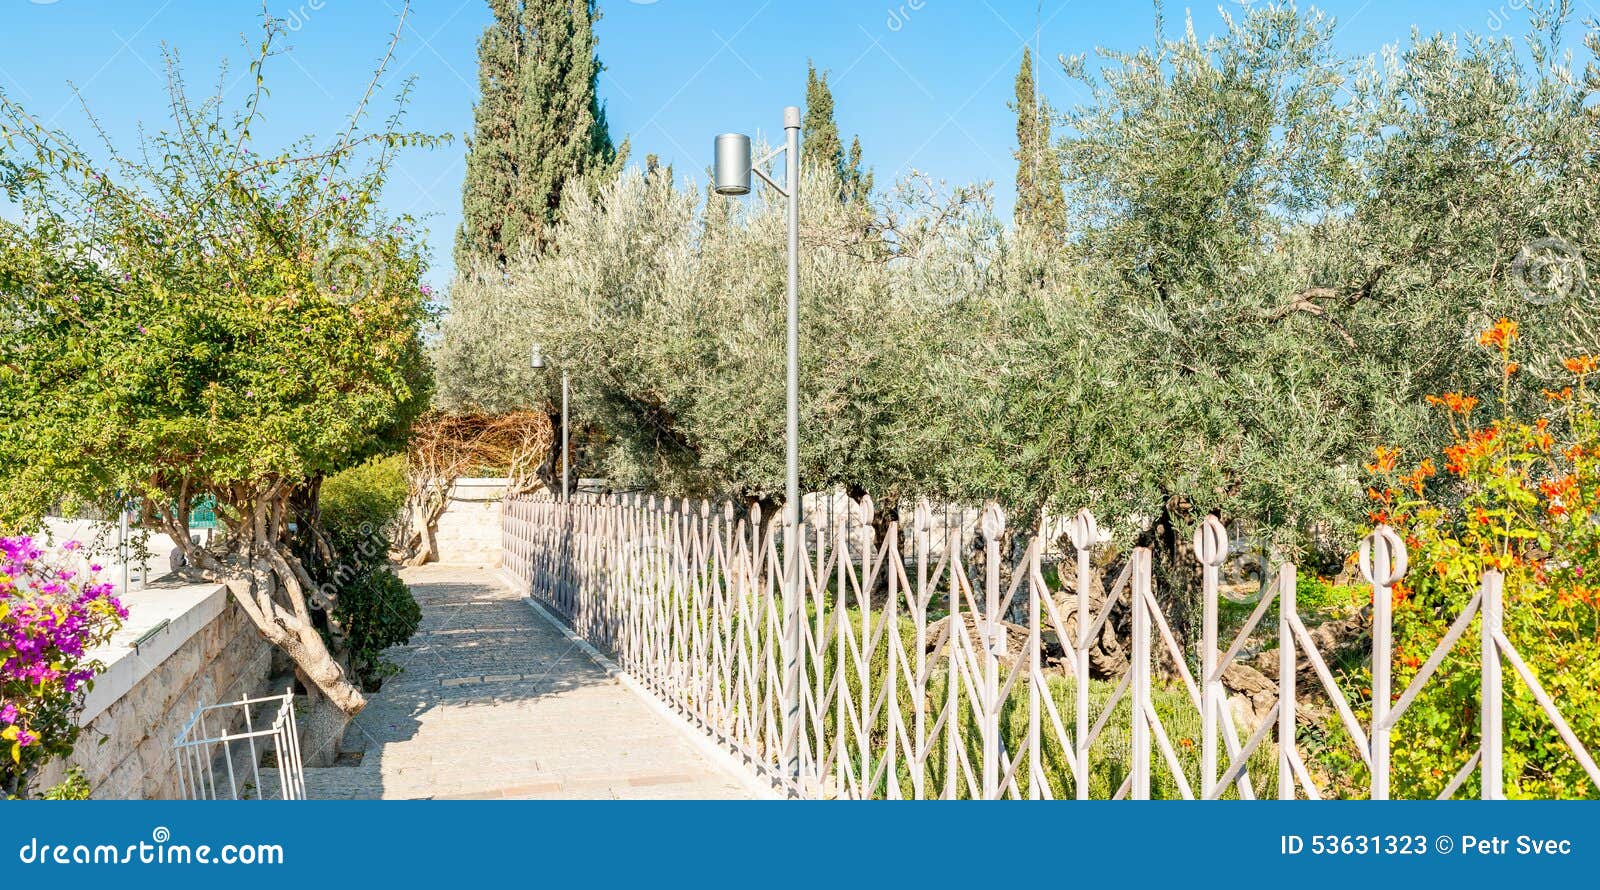 free clipart garden of gethsemane - photo #31